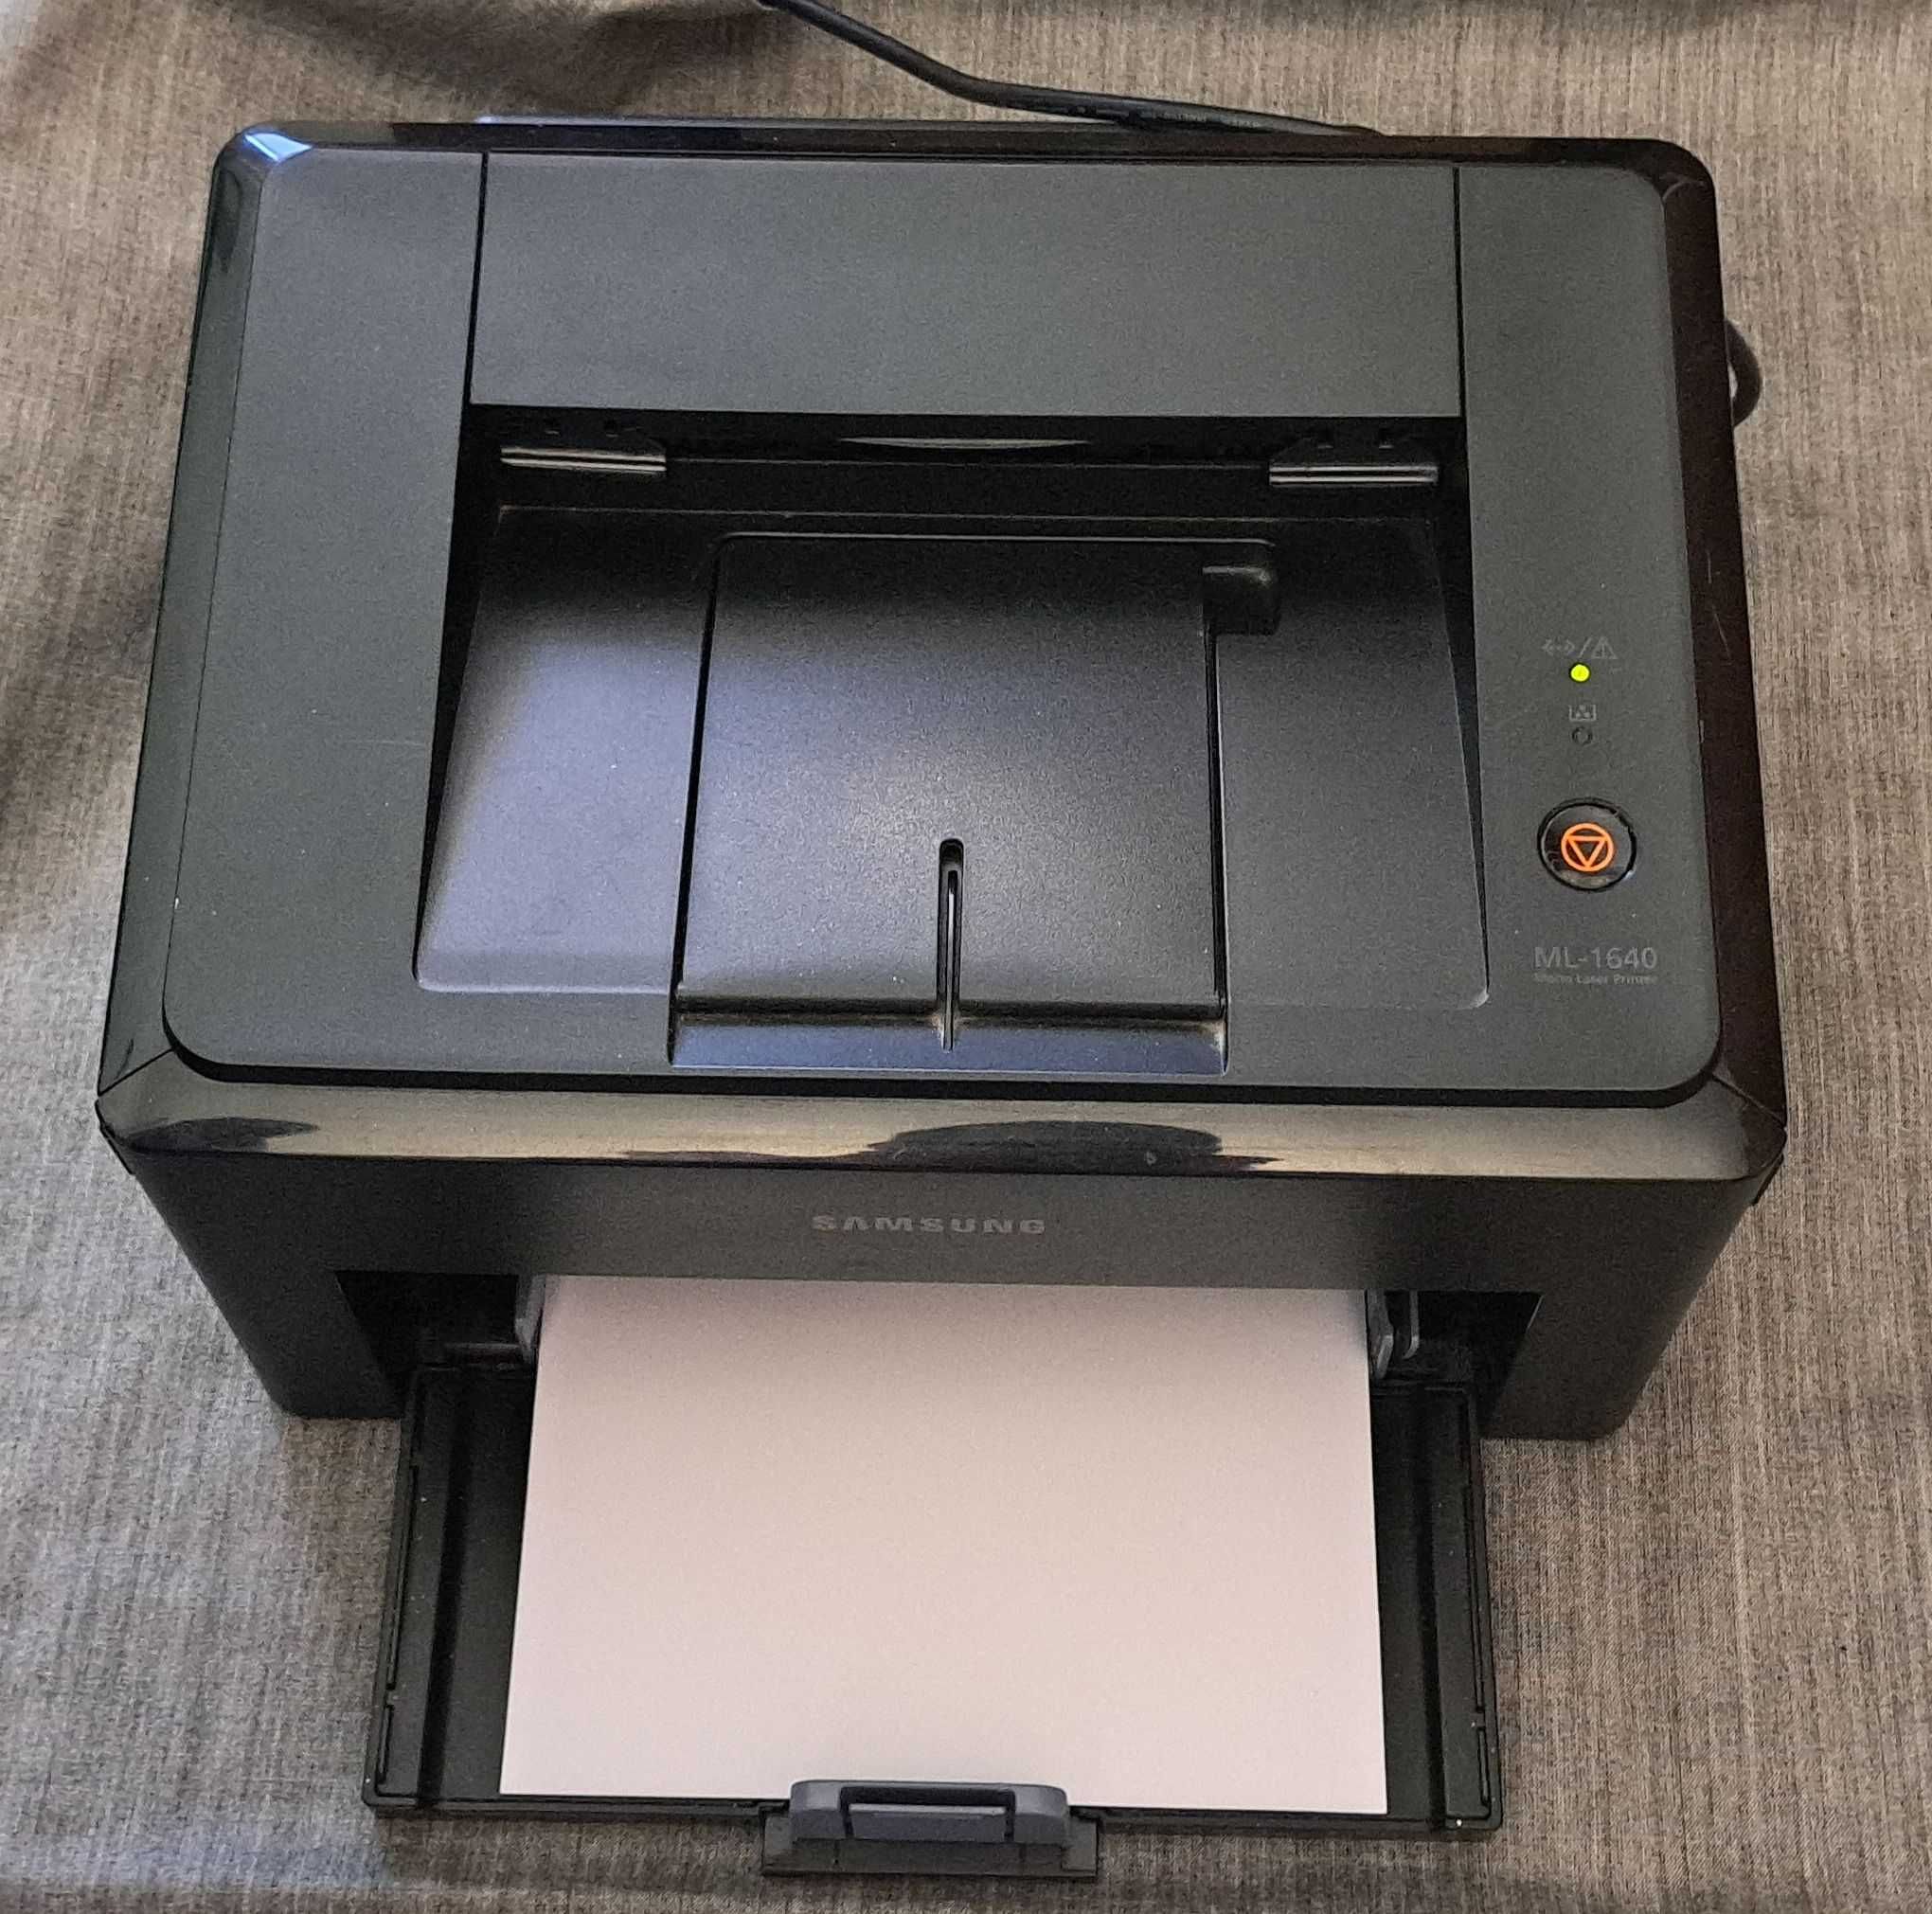 Принтер Samsung ML 1640.